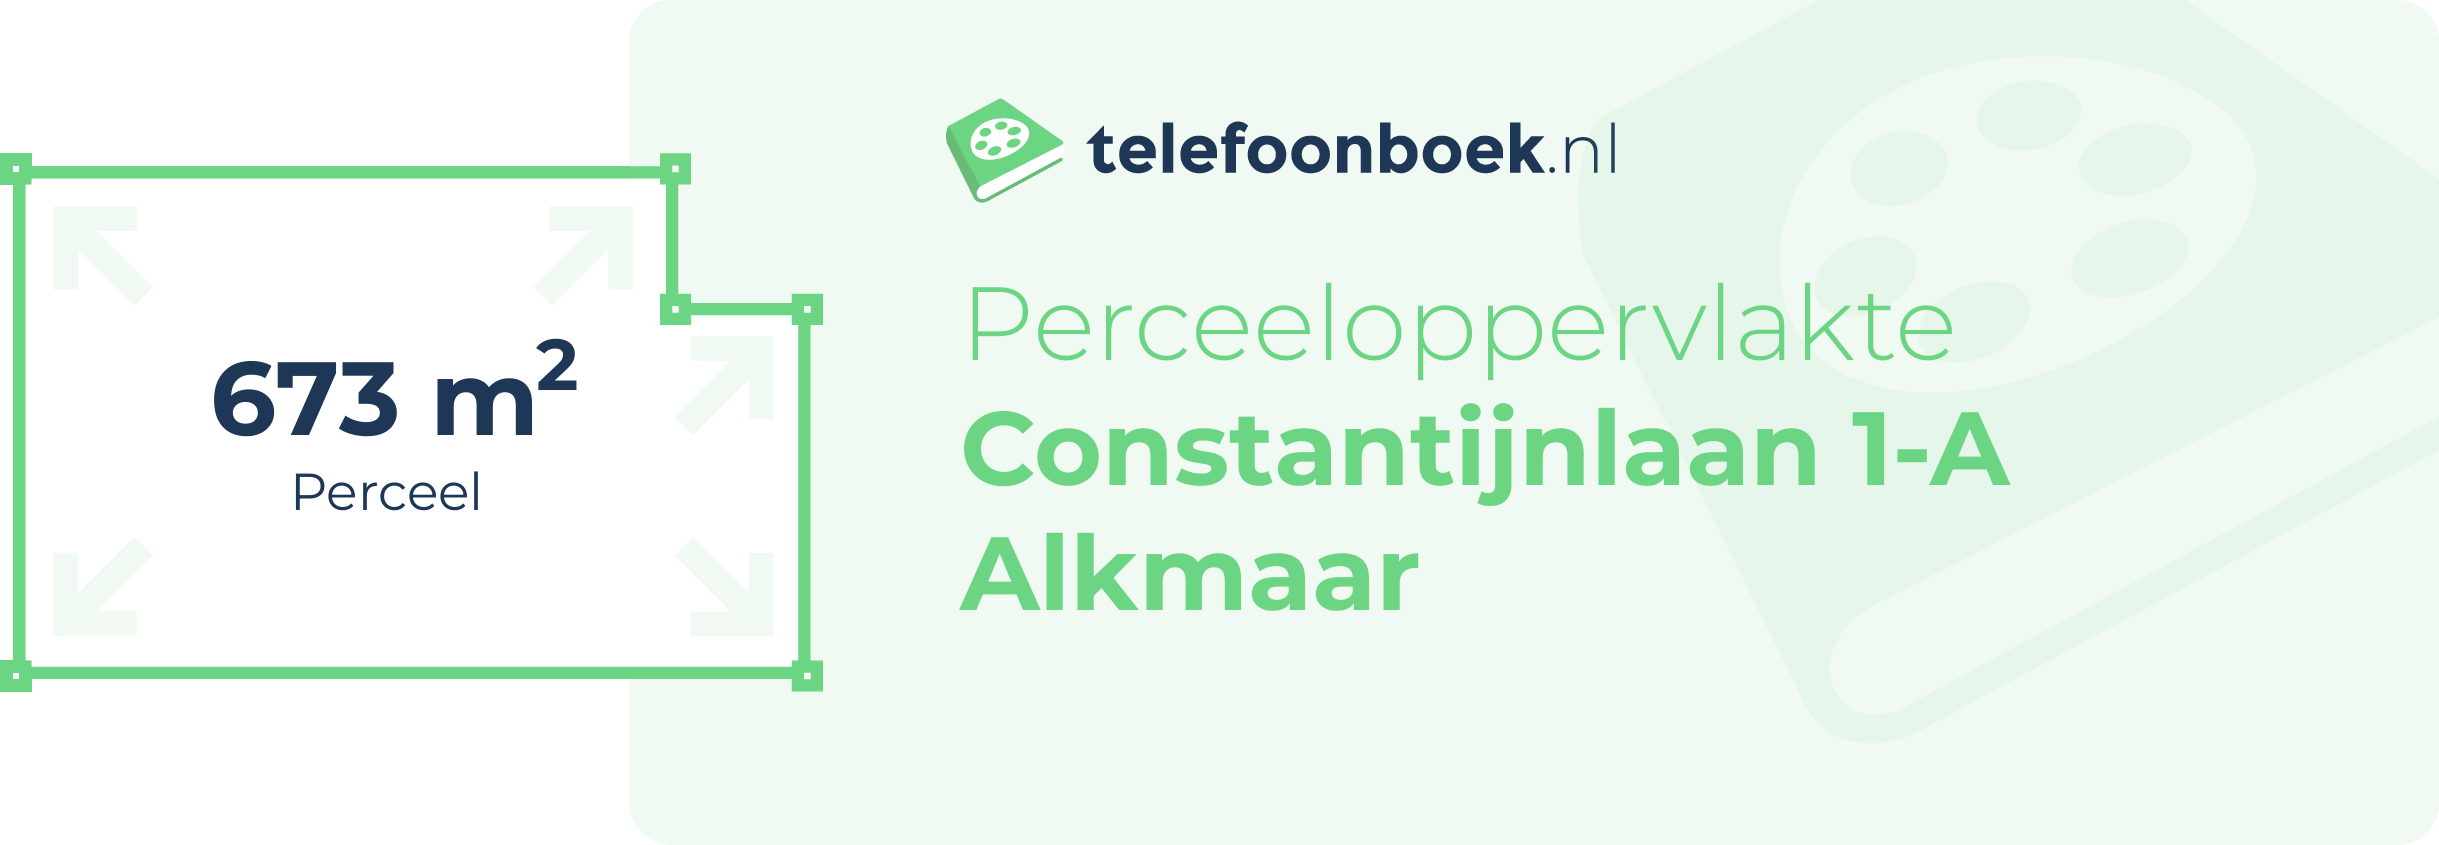 Perceeloppervlakte Constantijnlaan 1-A Alkmaar